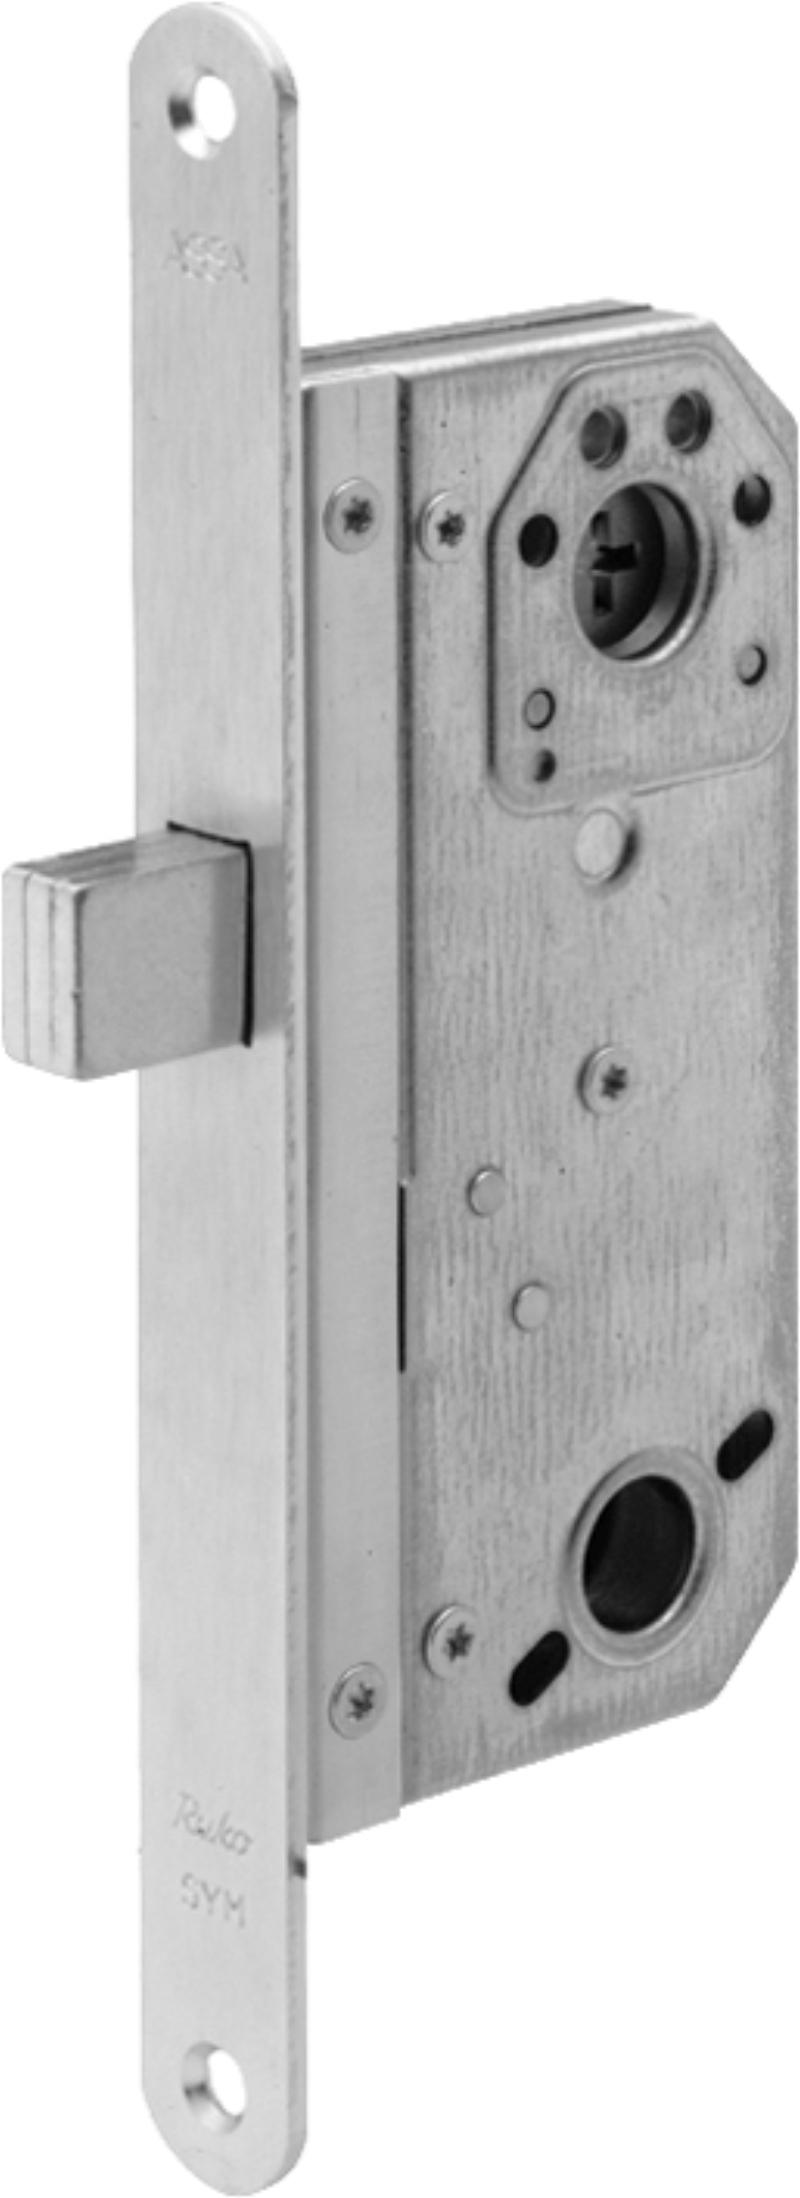 Assa låseboks 9788 m/mikro (521125)